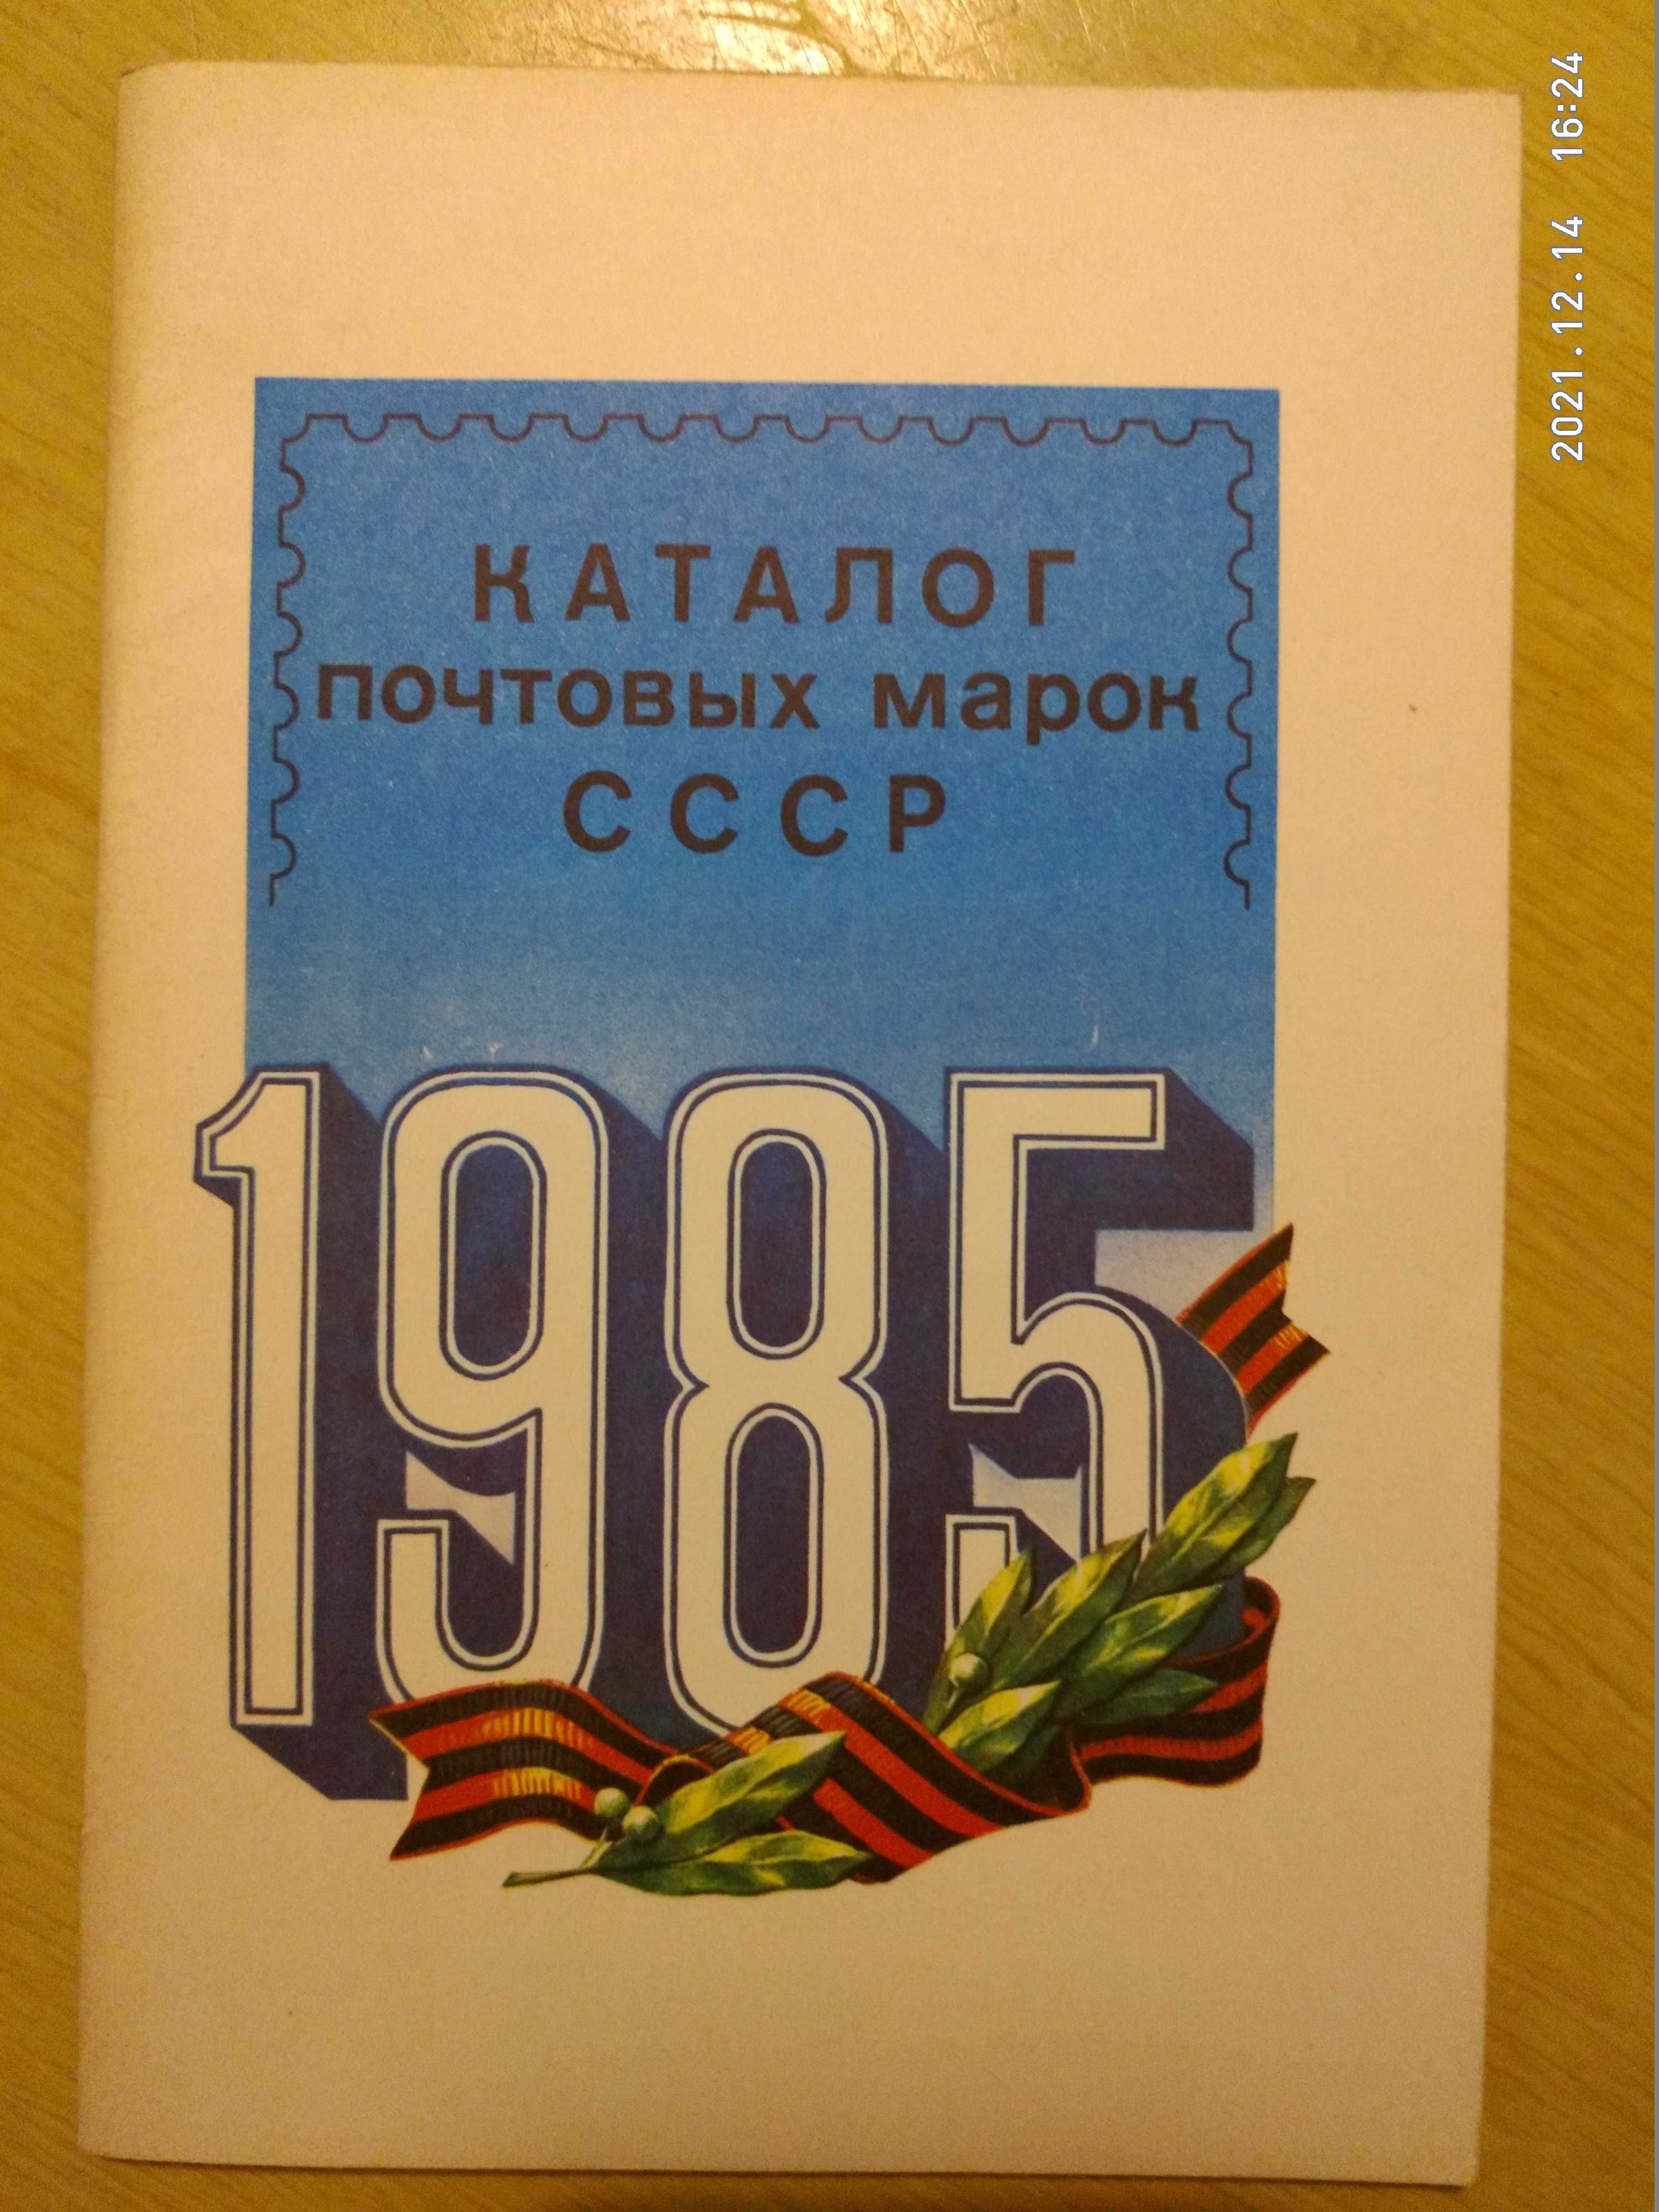 Каталоги почтовых марок и конвертов СССР 1960-х-80х годов